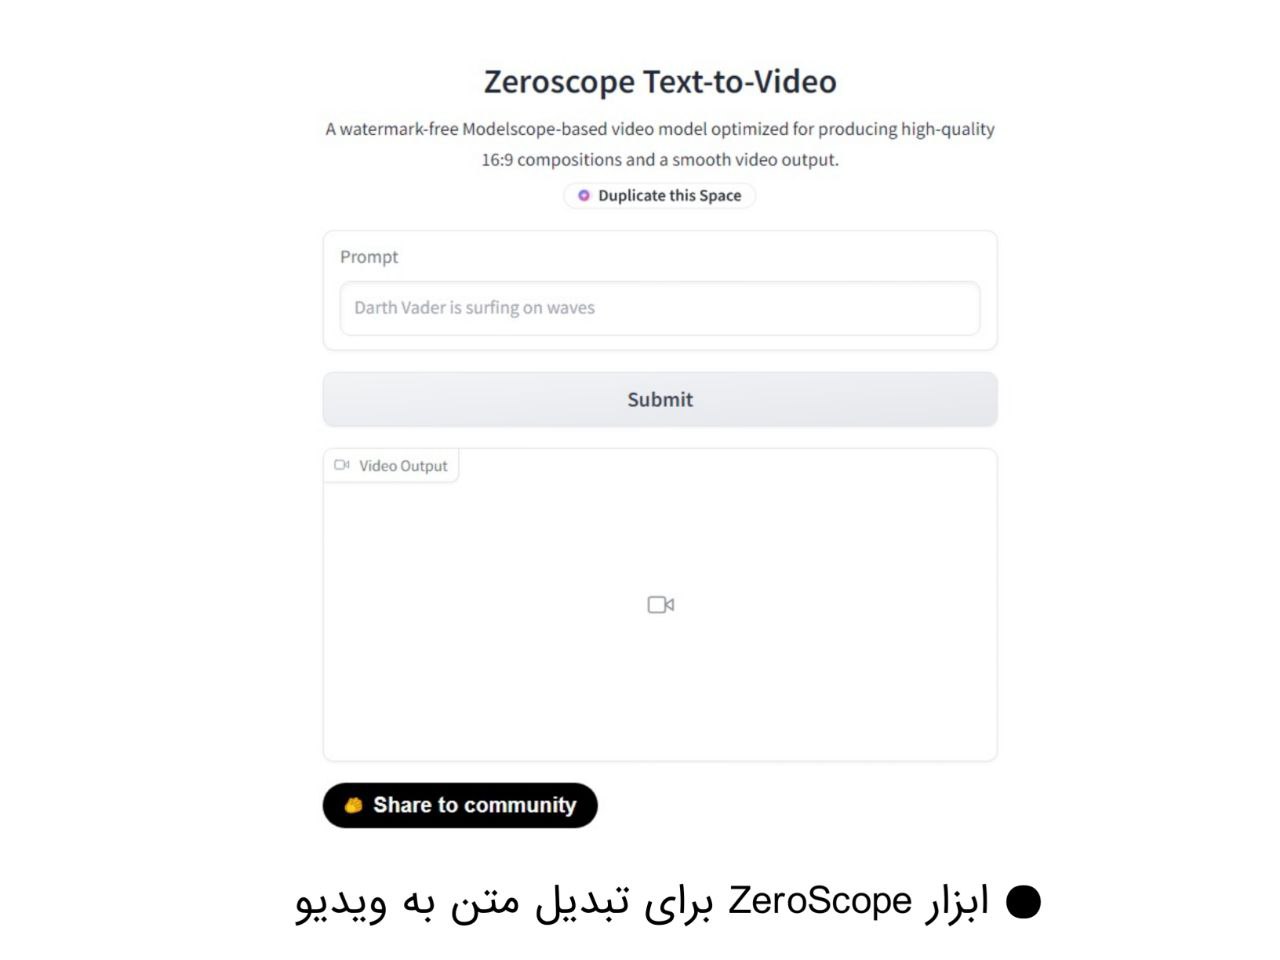 تبدیل متن به ویدیو با هوش مصنوعی با ابزار zeroscope 